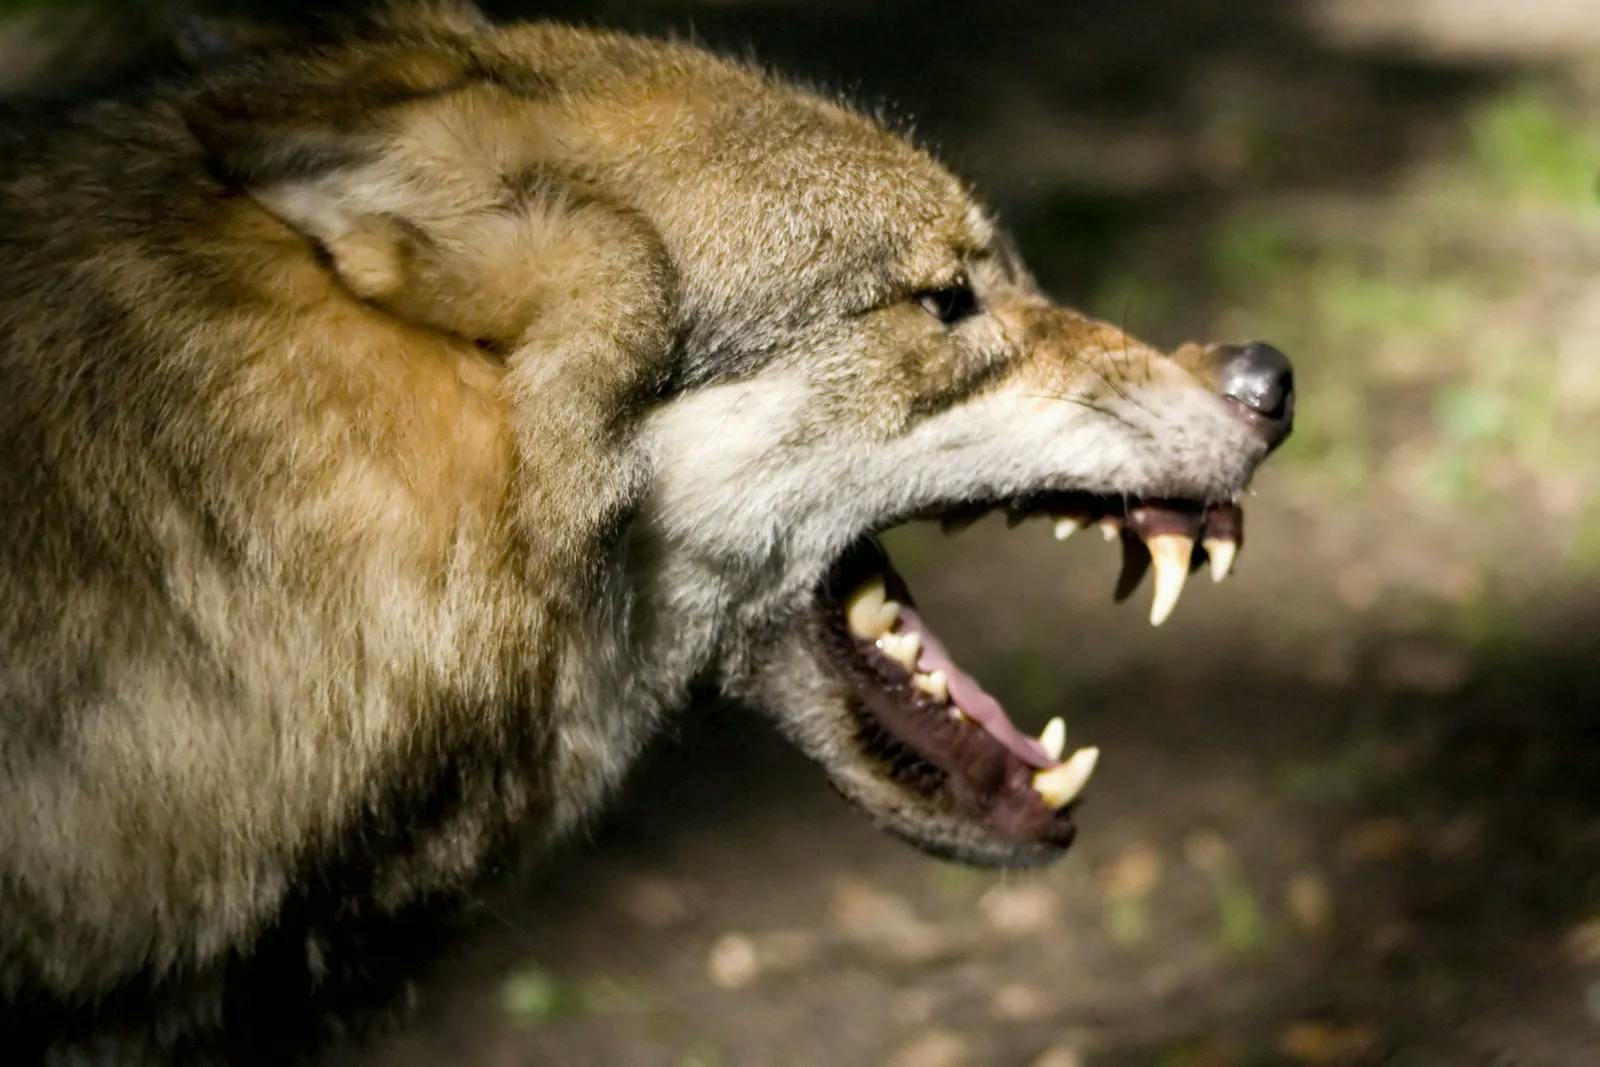 Des Menschen Wolf – Gruppenbezogene Menschenfeindlichkeit